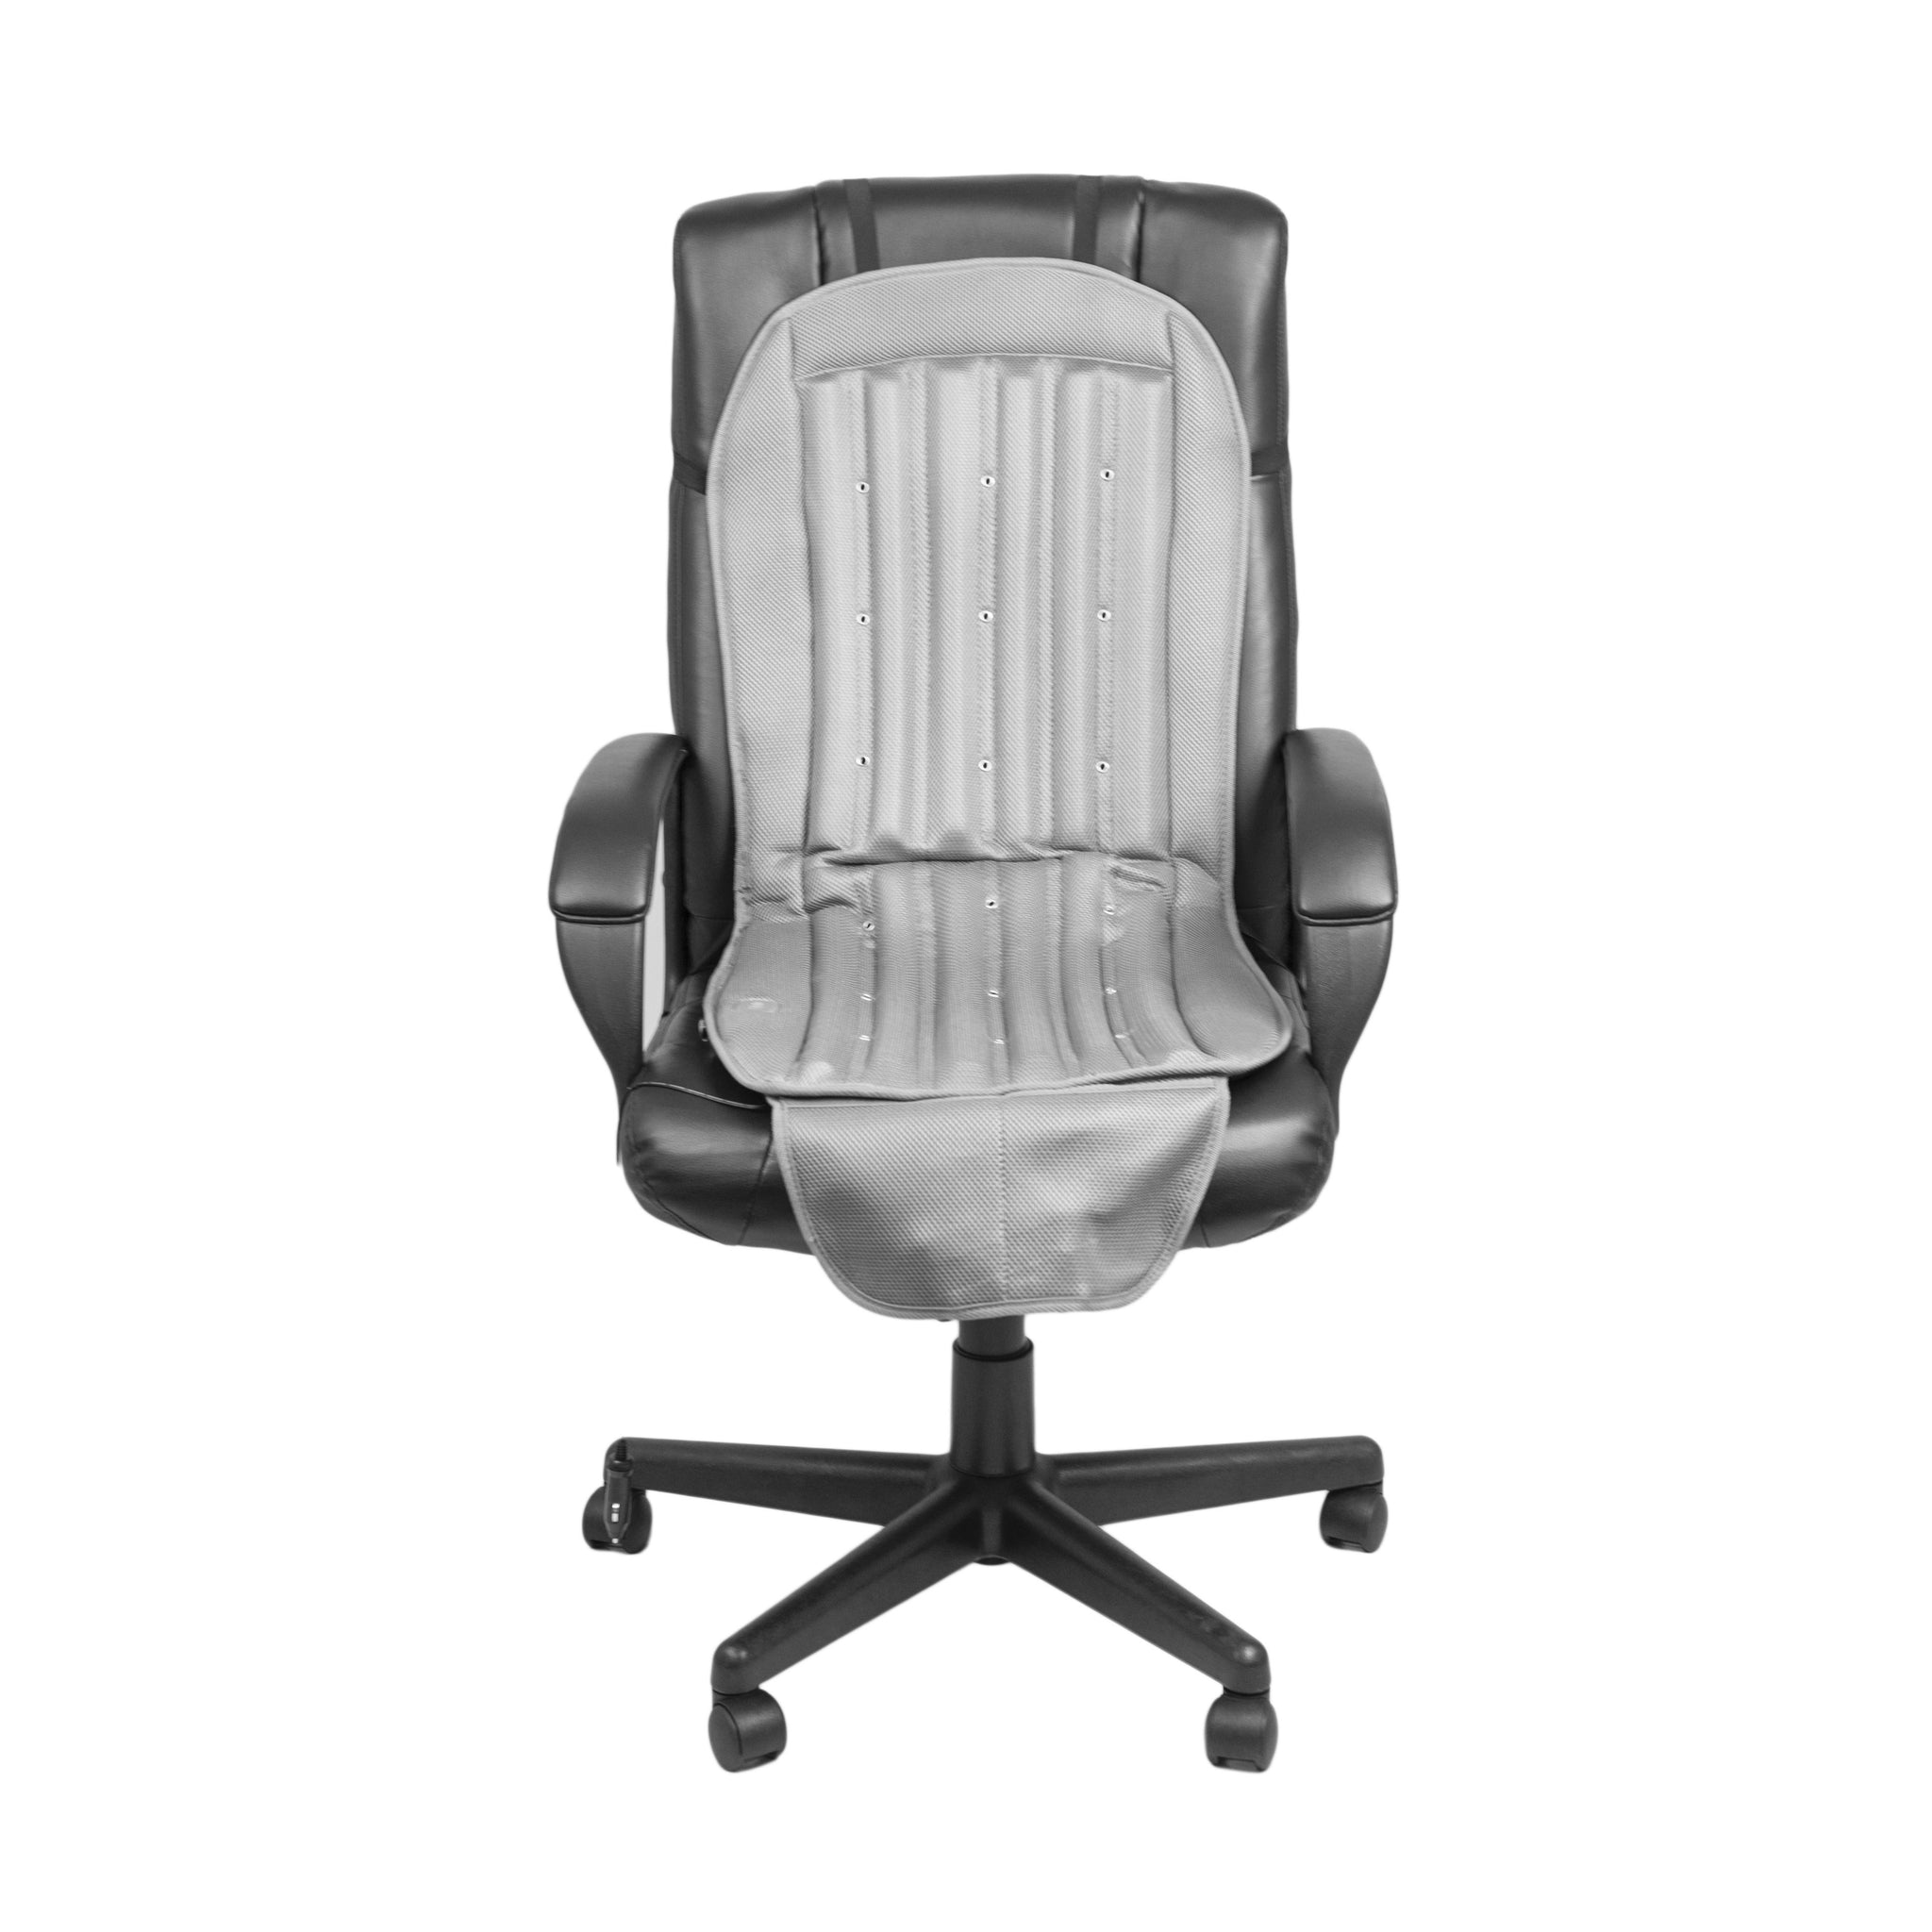 https://wagan.com/cdn/shop/products/wagan9886_12v-cool-air-car-cushion_chair_1024x1024@2x.jpg?v=1582828201